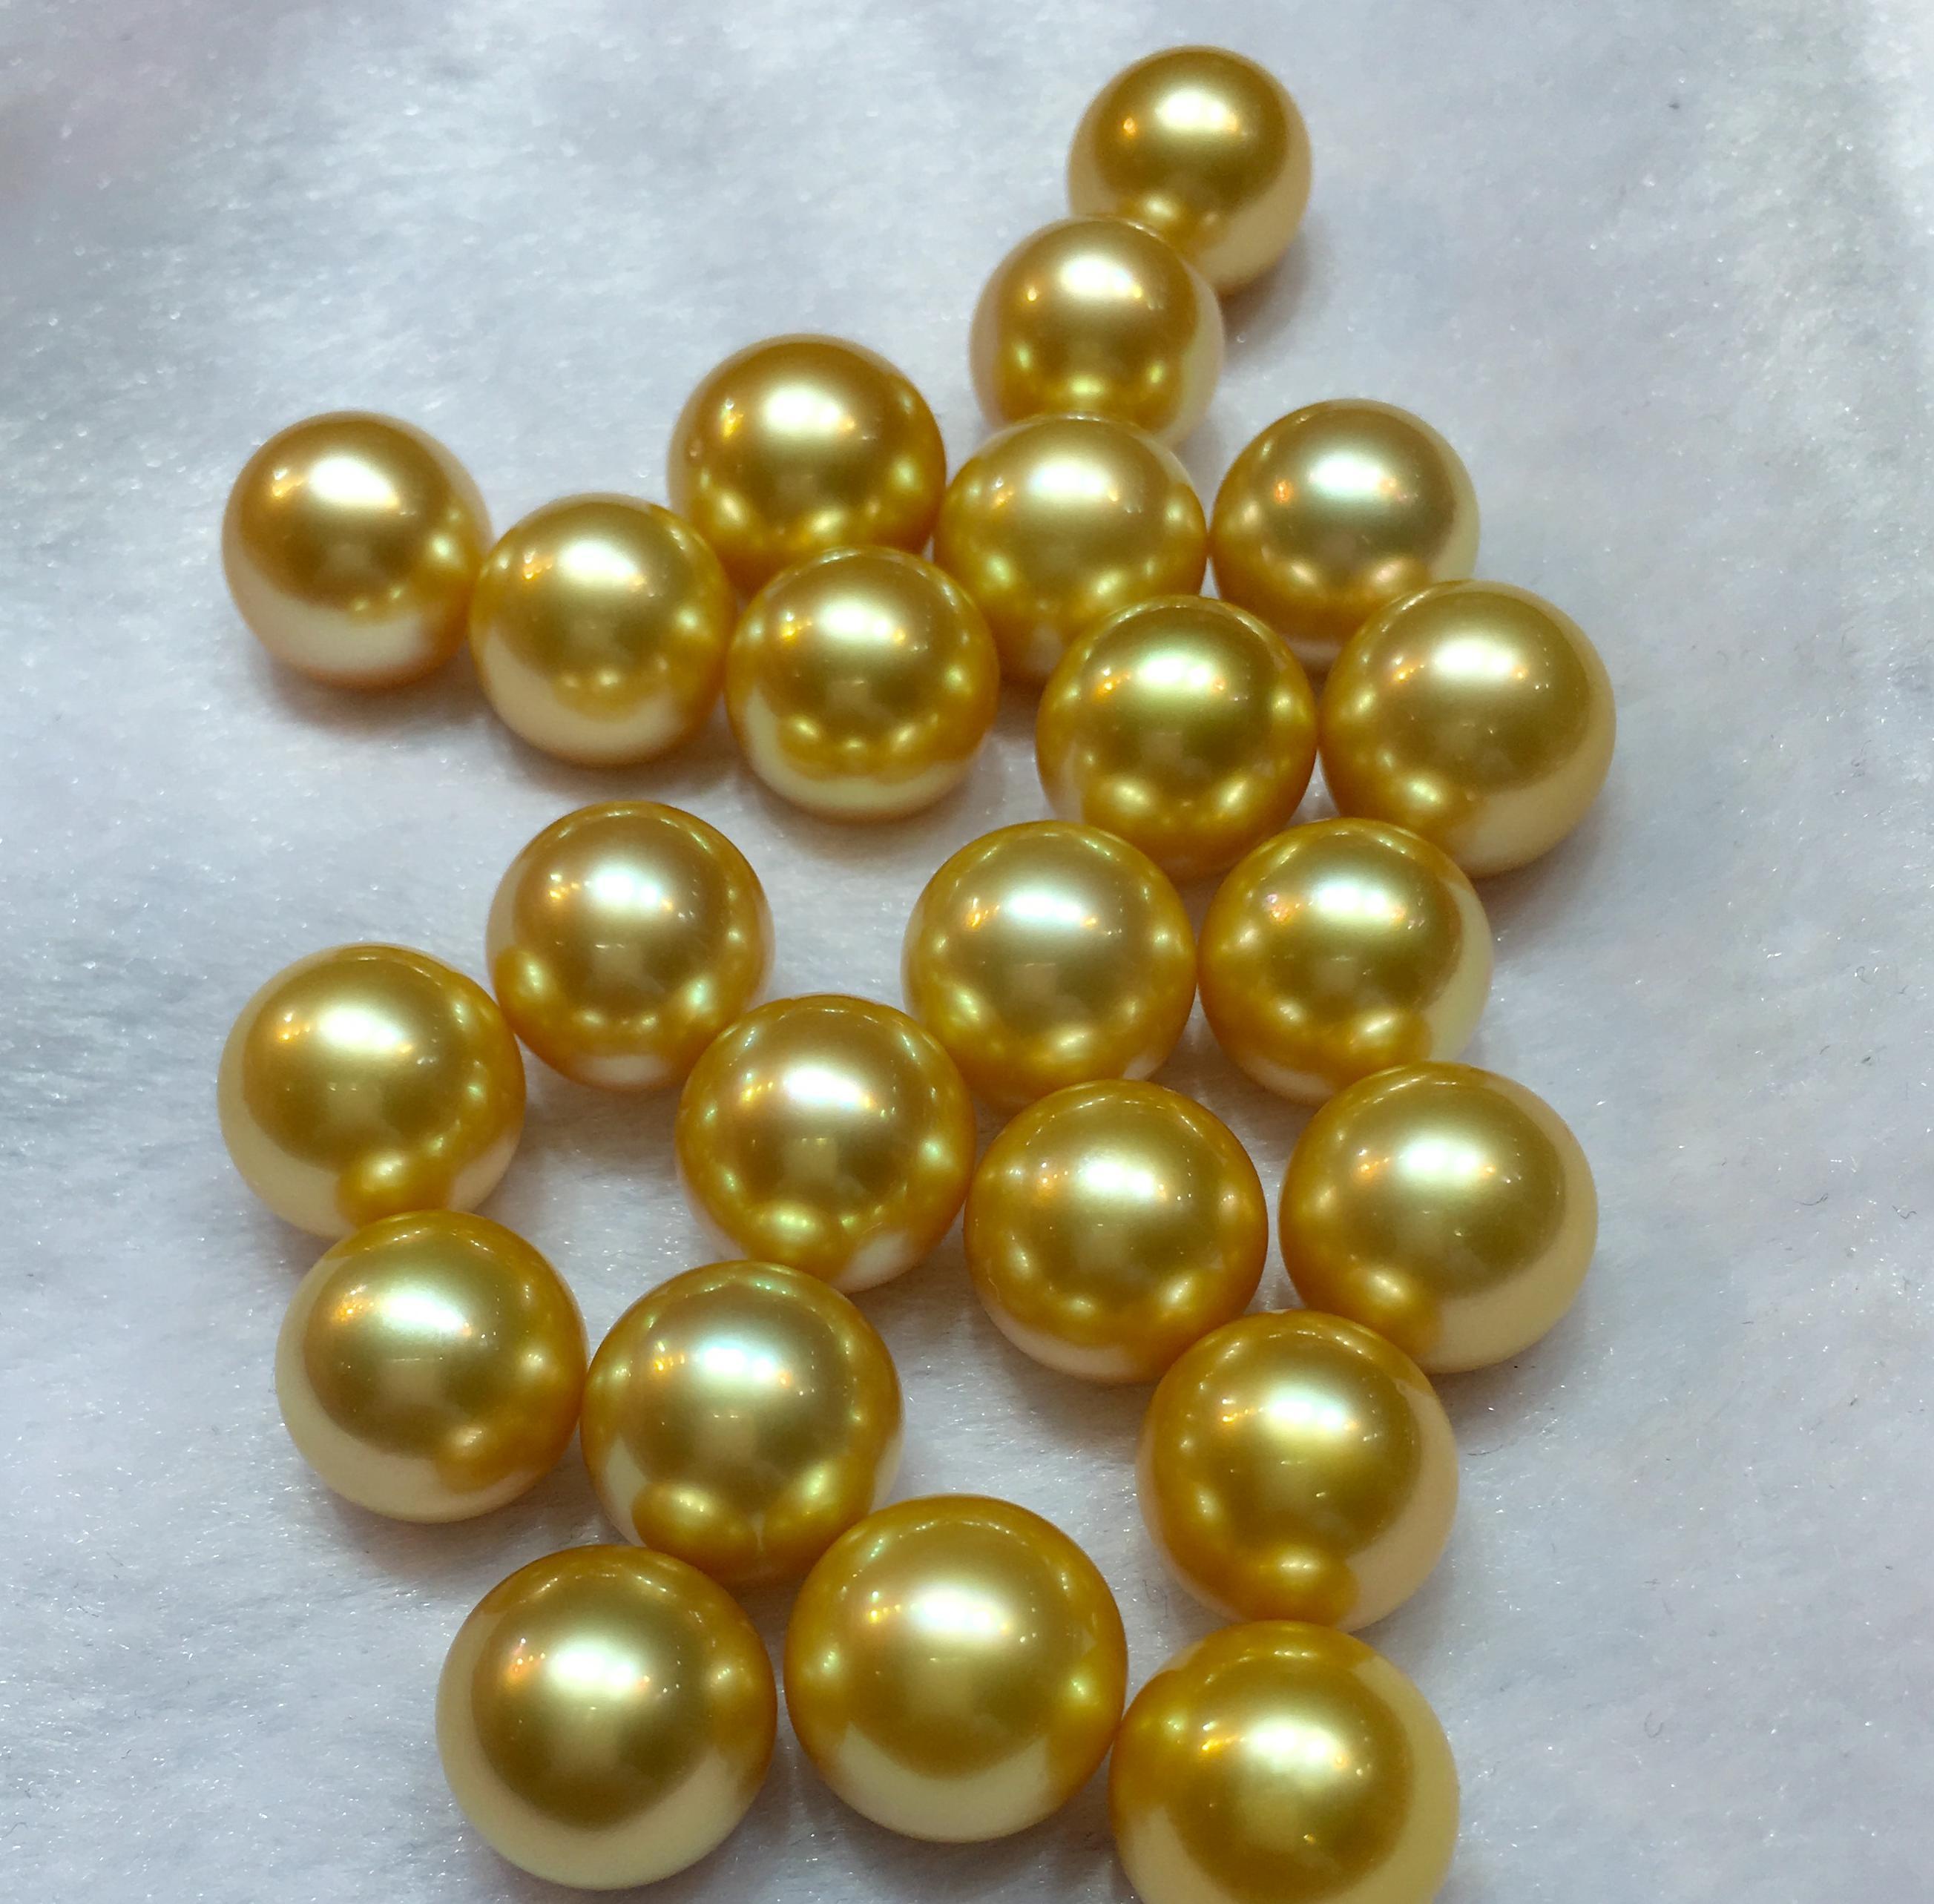 南洋金珠属于有核养殖珍珠,其母贝为金唇贝或白唇贝,由于其母贝体积